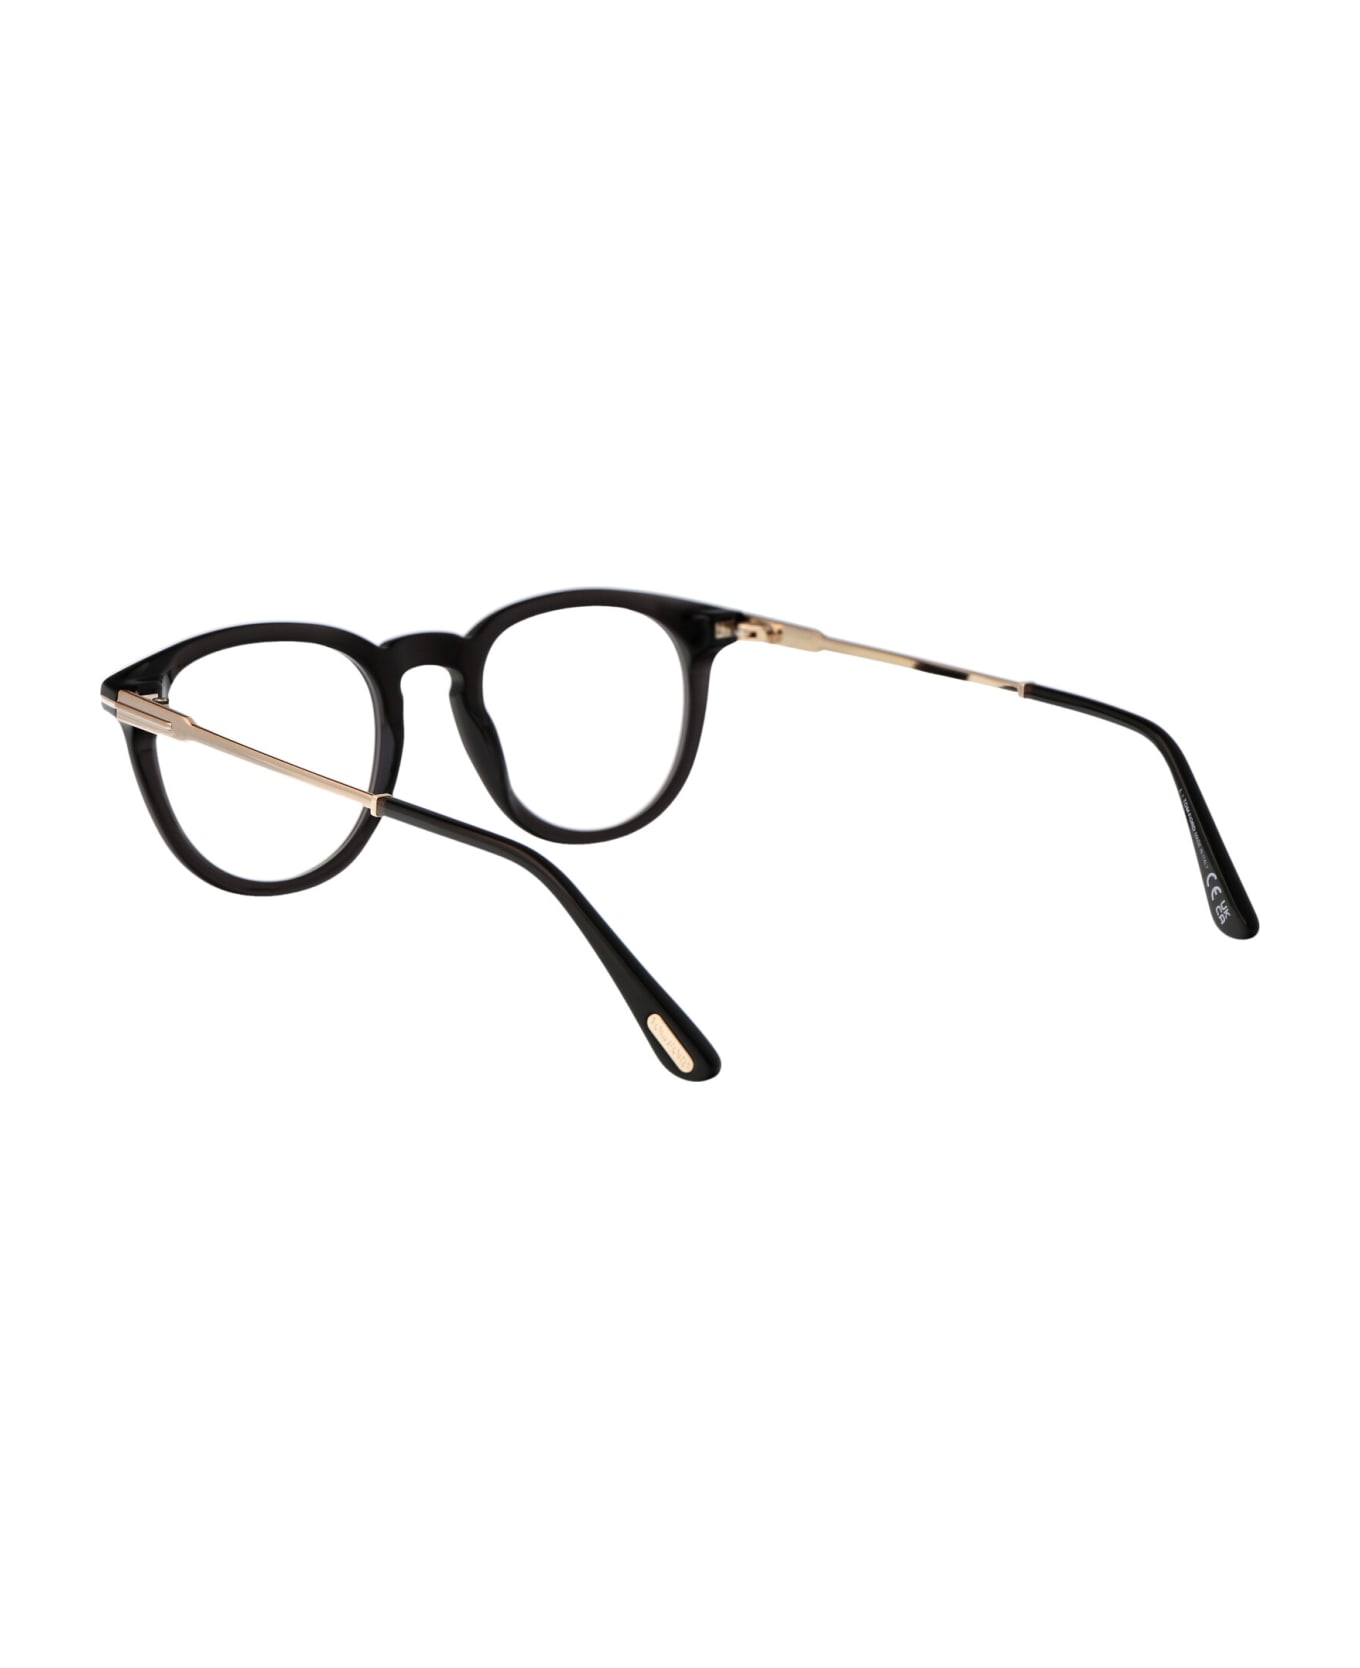 Tom Ford Eyewear Ft5905-b Glasses - 005 Nero/Altro アイウェア